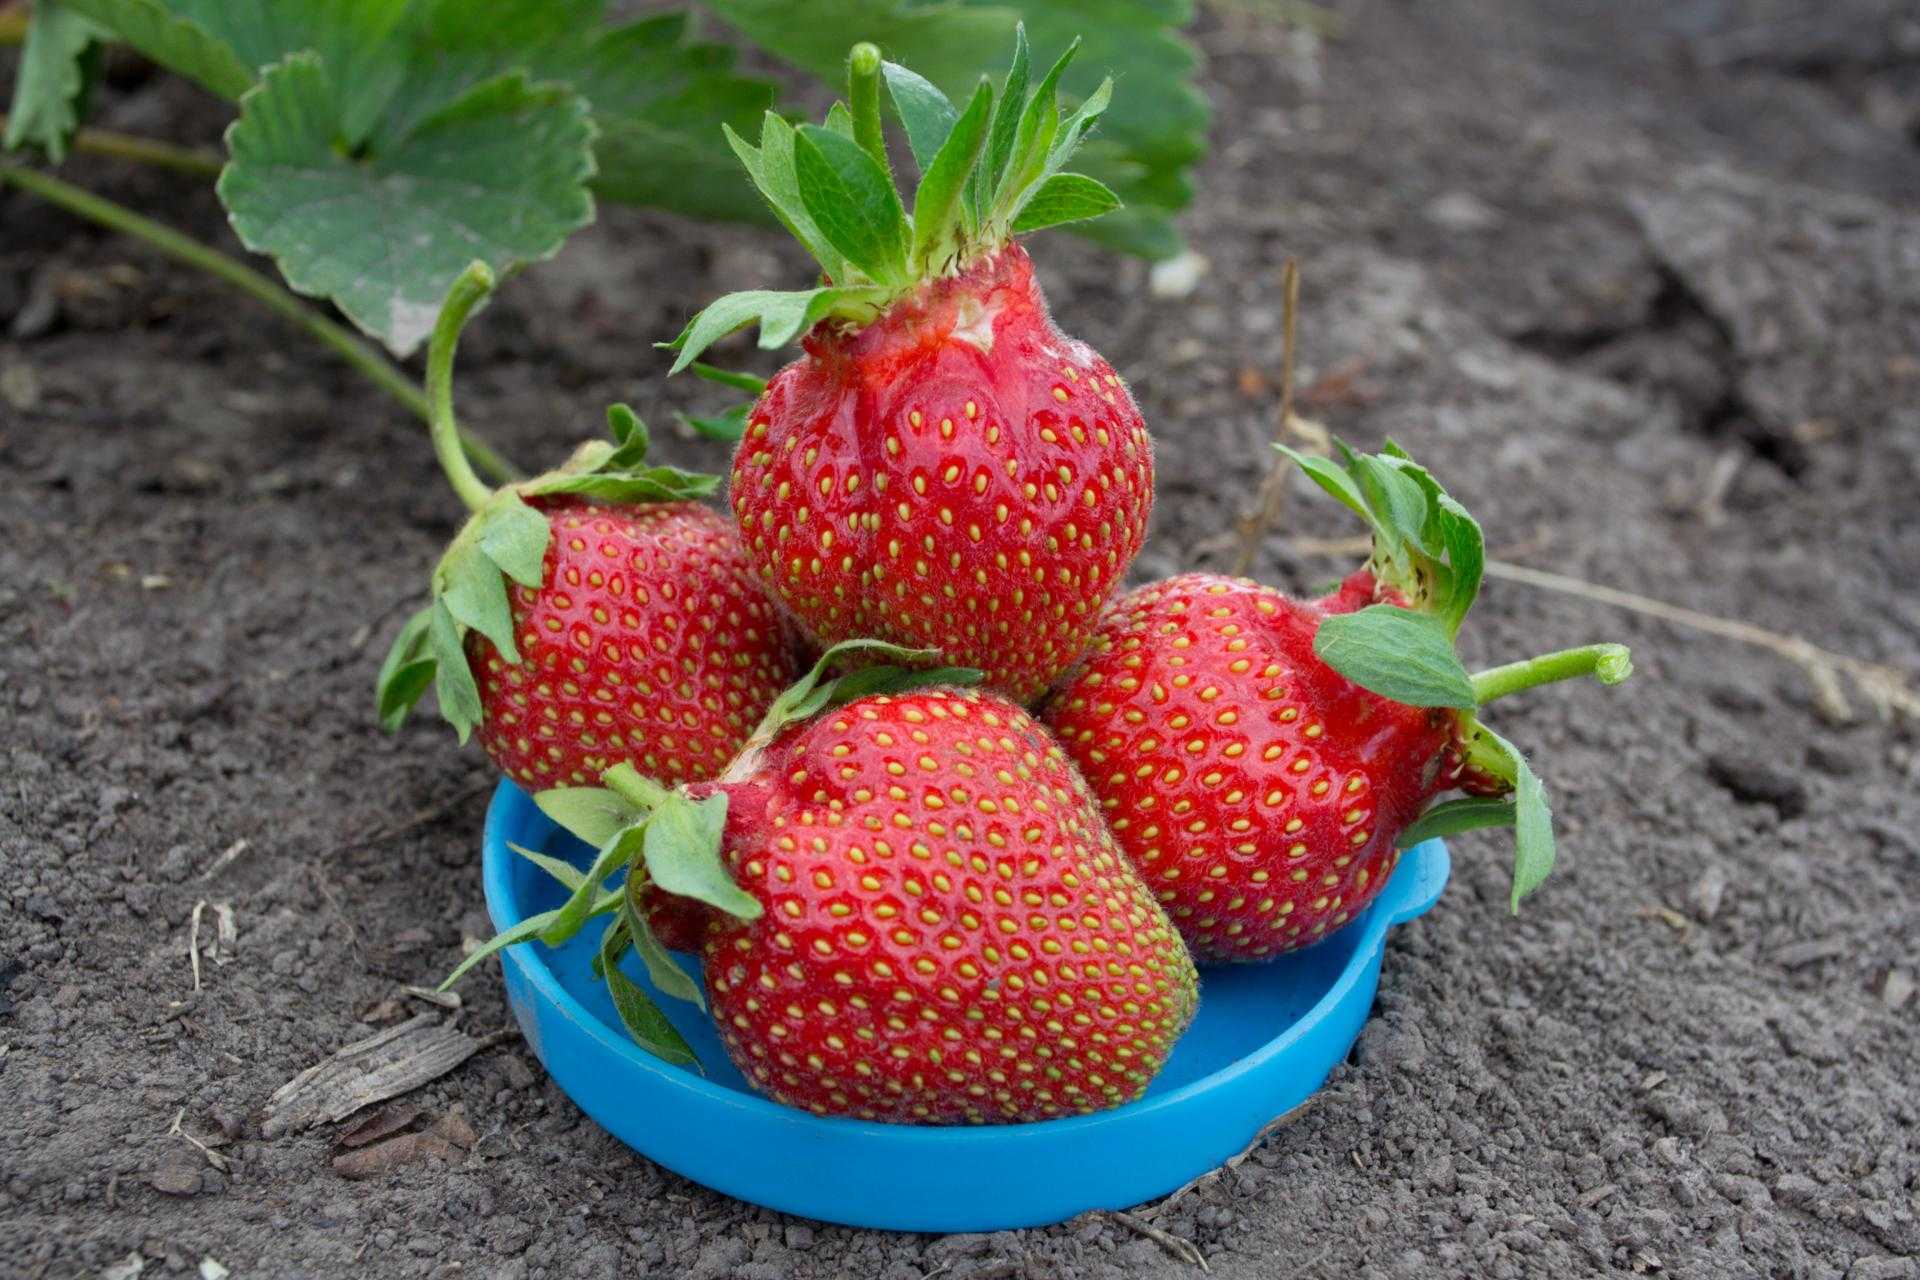 Клубника царица: описание и характеристика сорта вкусных ягод, отзывы и особенности выращивания